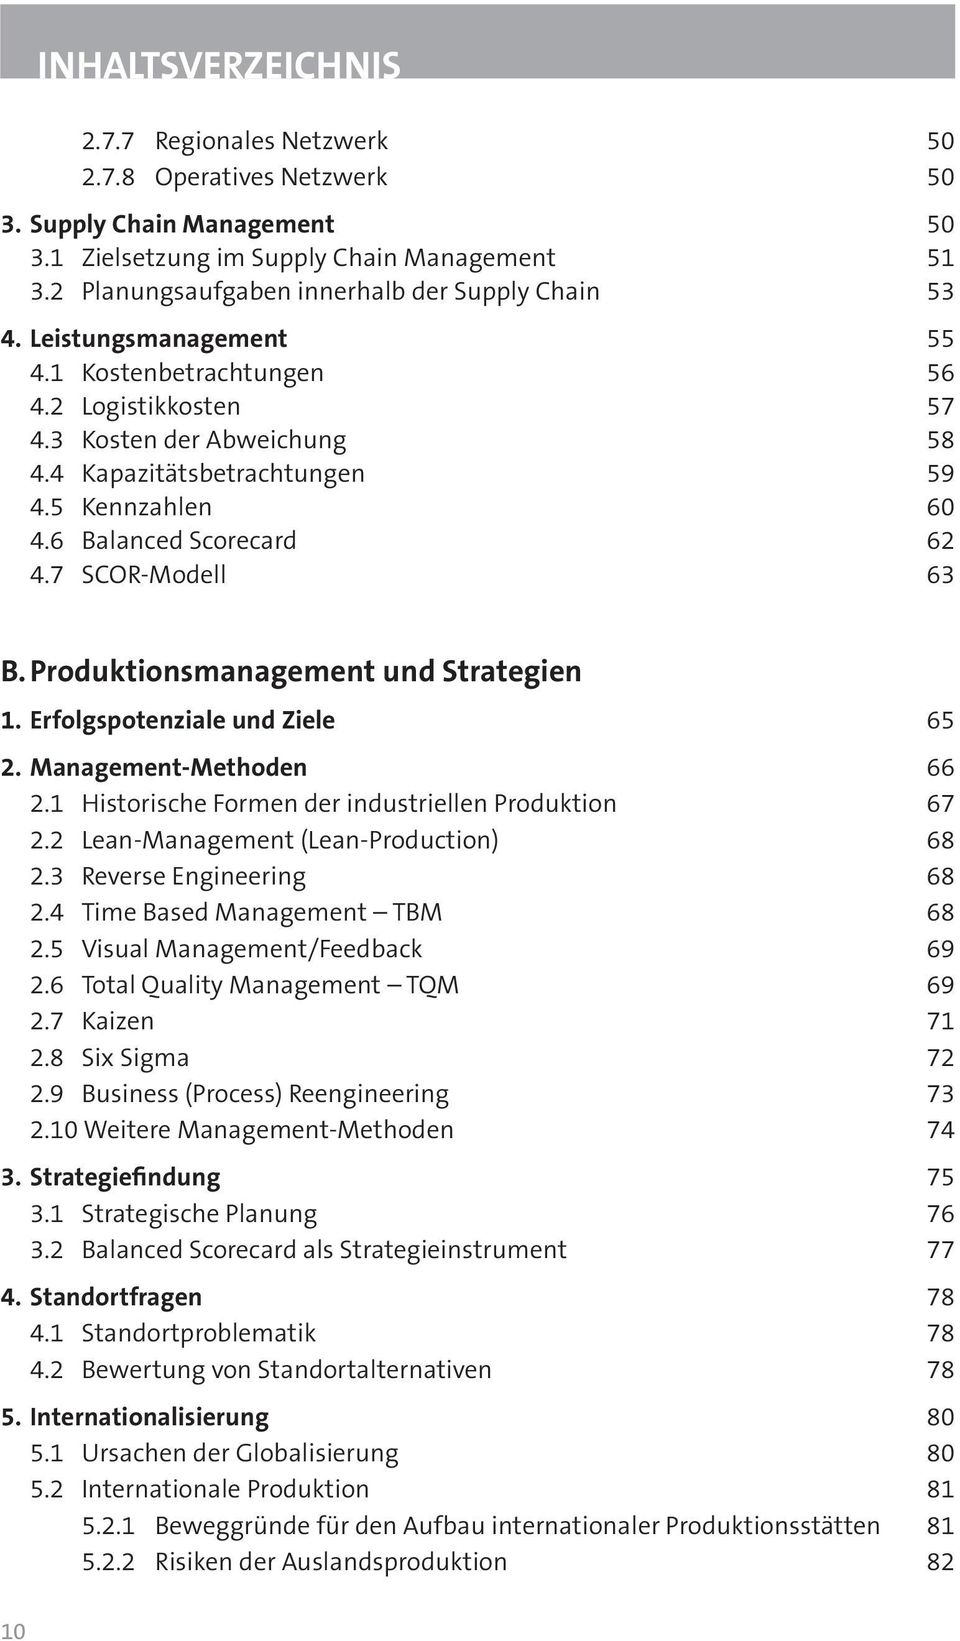 Produktionsmanagement und Strategien 1. Erfolgspotenziale und Ziele 65 2. Management-Methoden 66 2.1 Historische Formen der industriellen Produktion 67 2.2 Lean-Management (Lean-Production) 68 2.